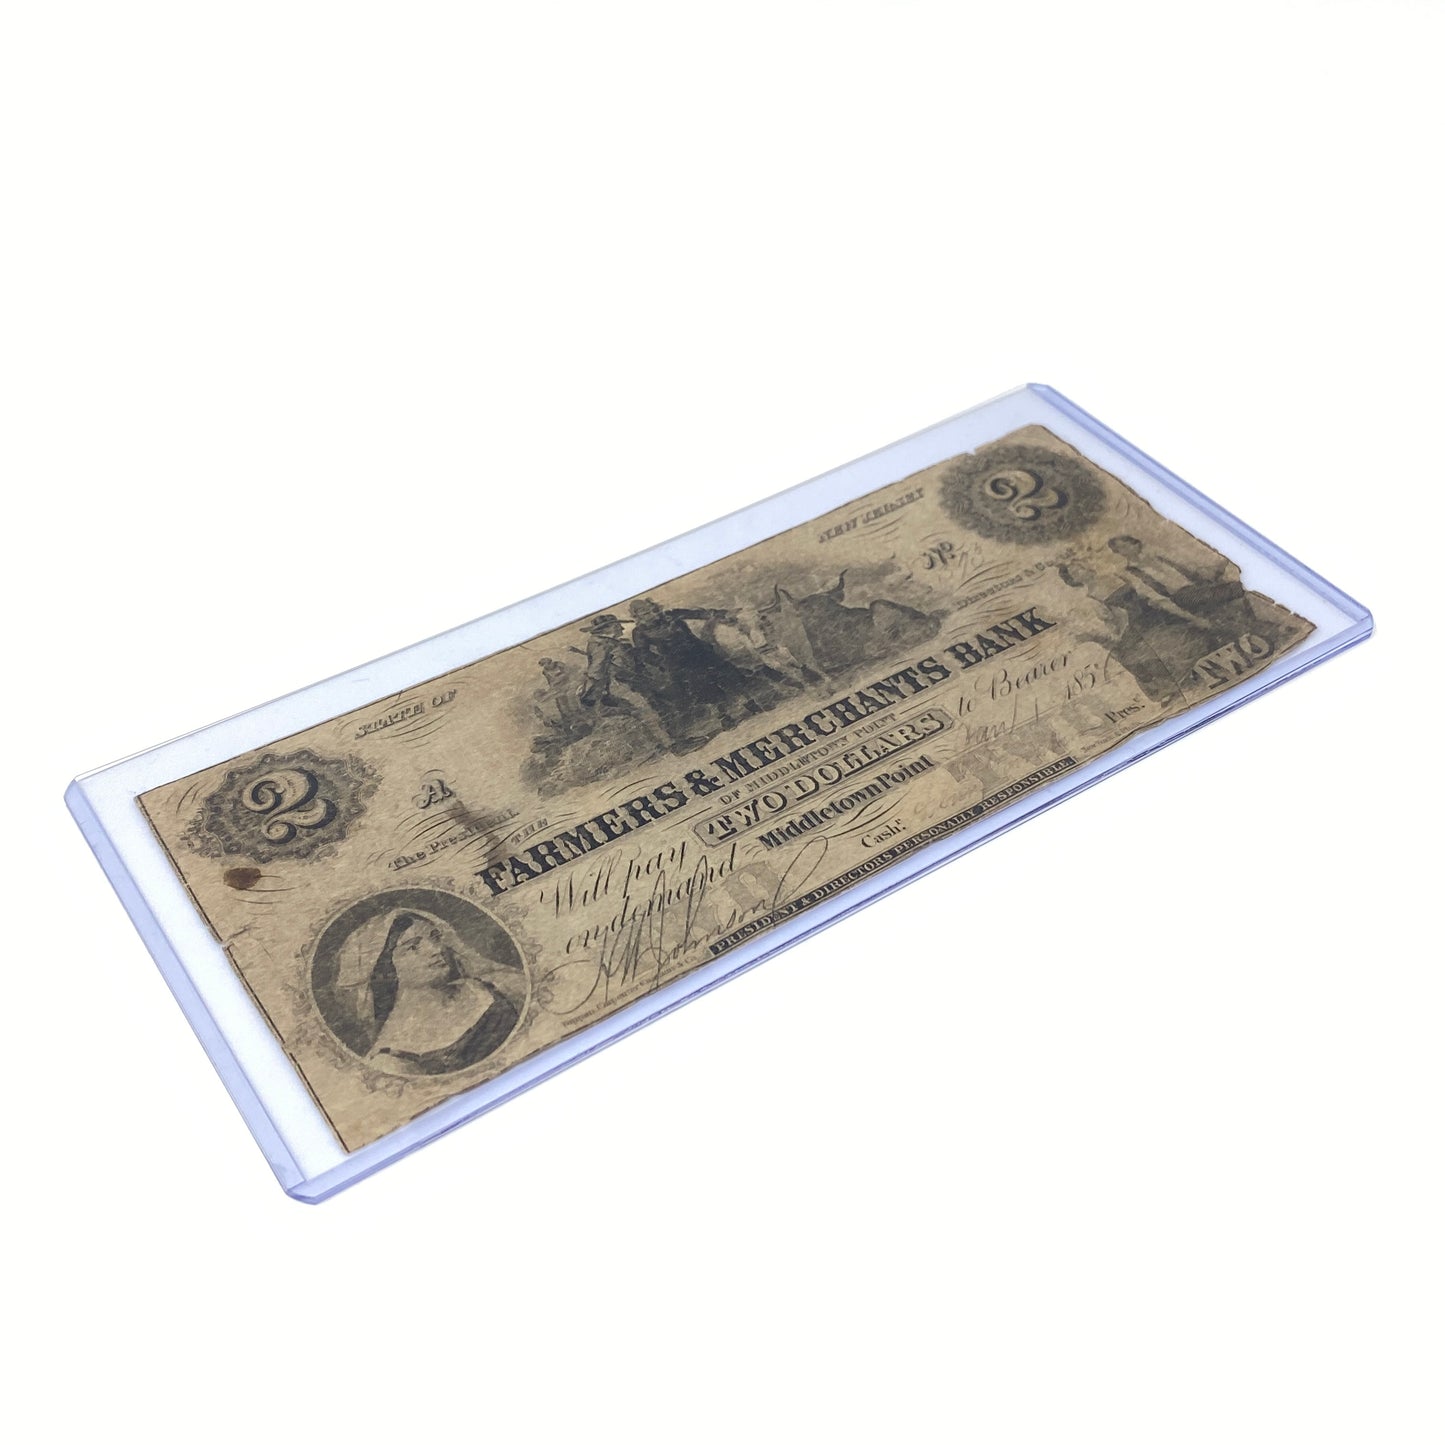 1854 $2 Farmers & Merchants Bank NJ Obsolete Note